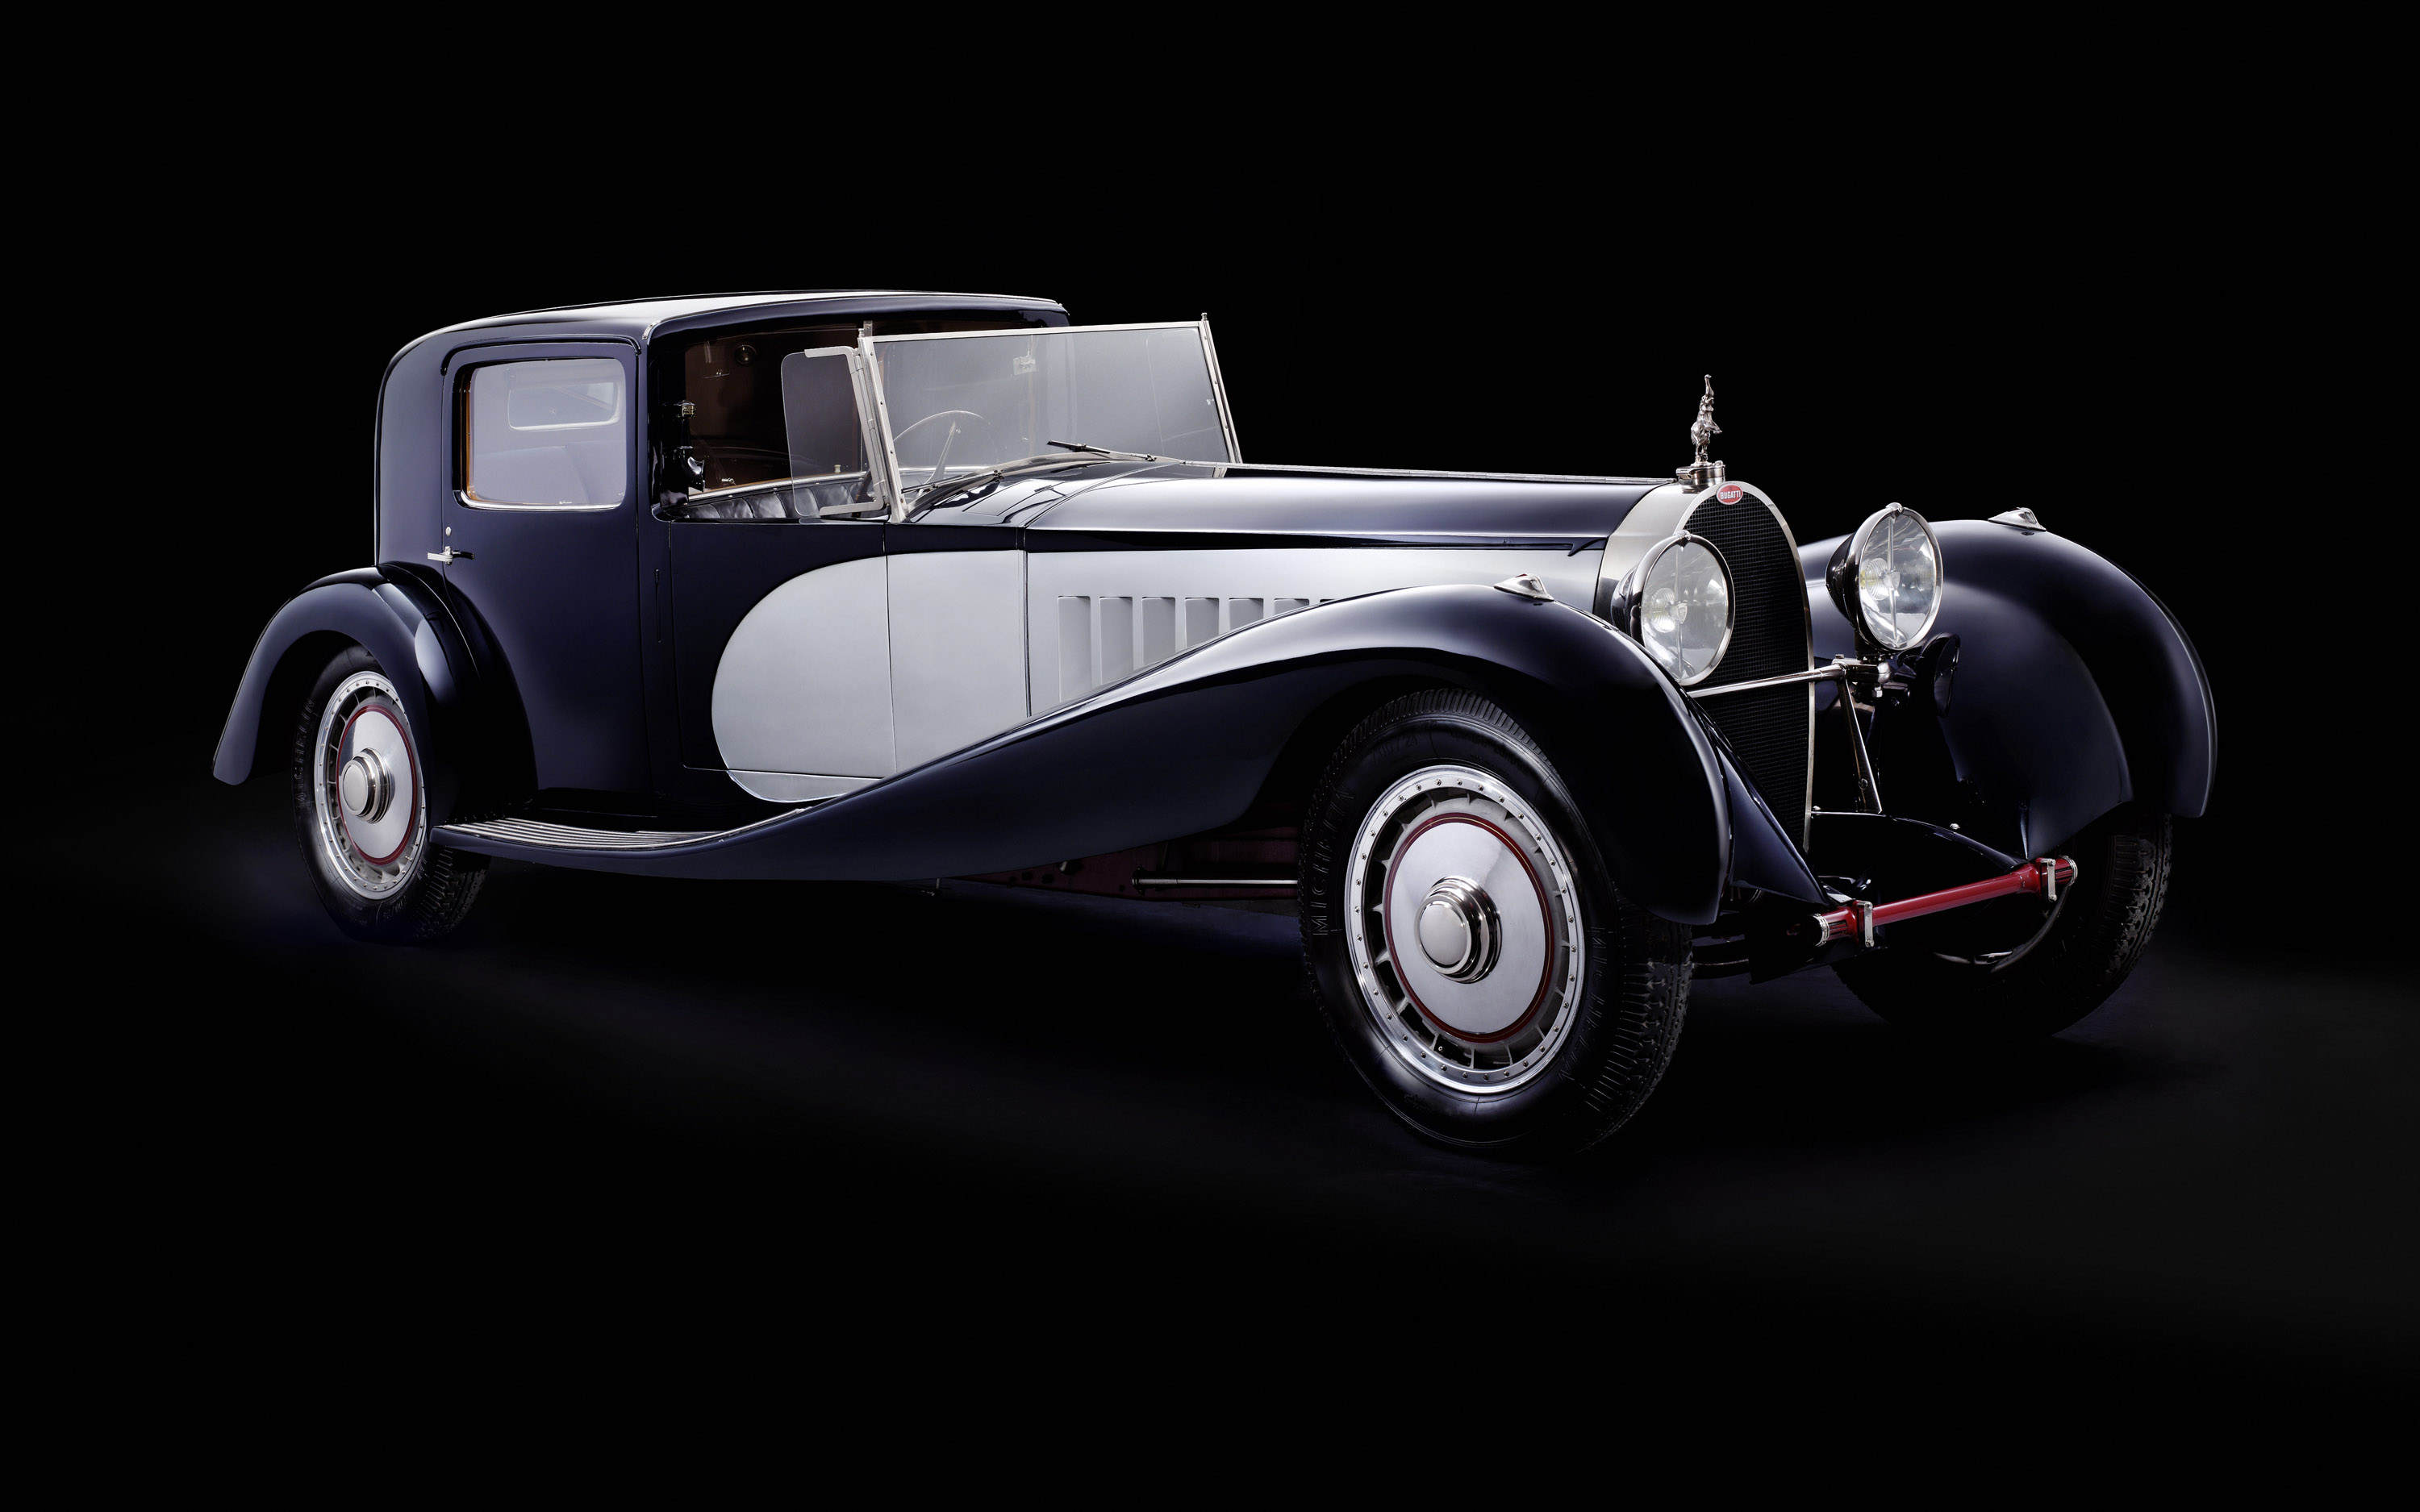 Art of Bugatti Exhibition